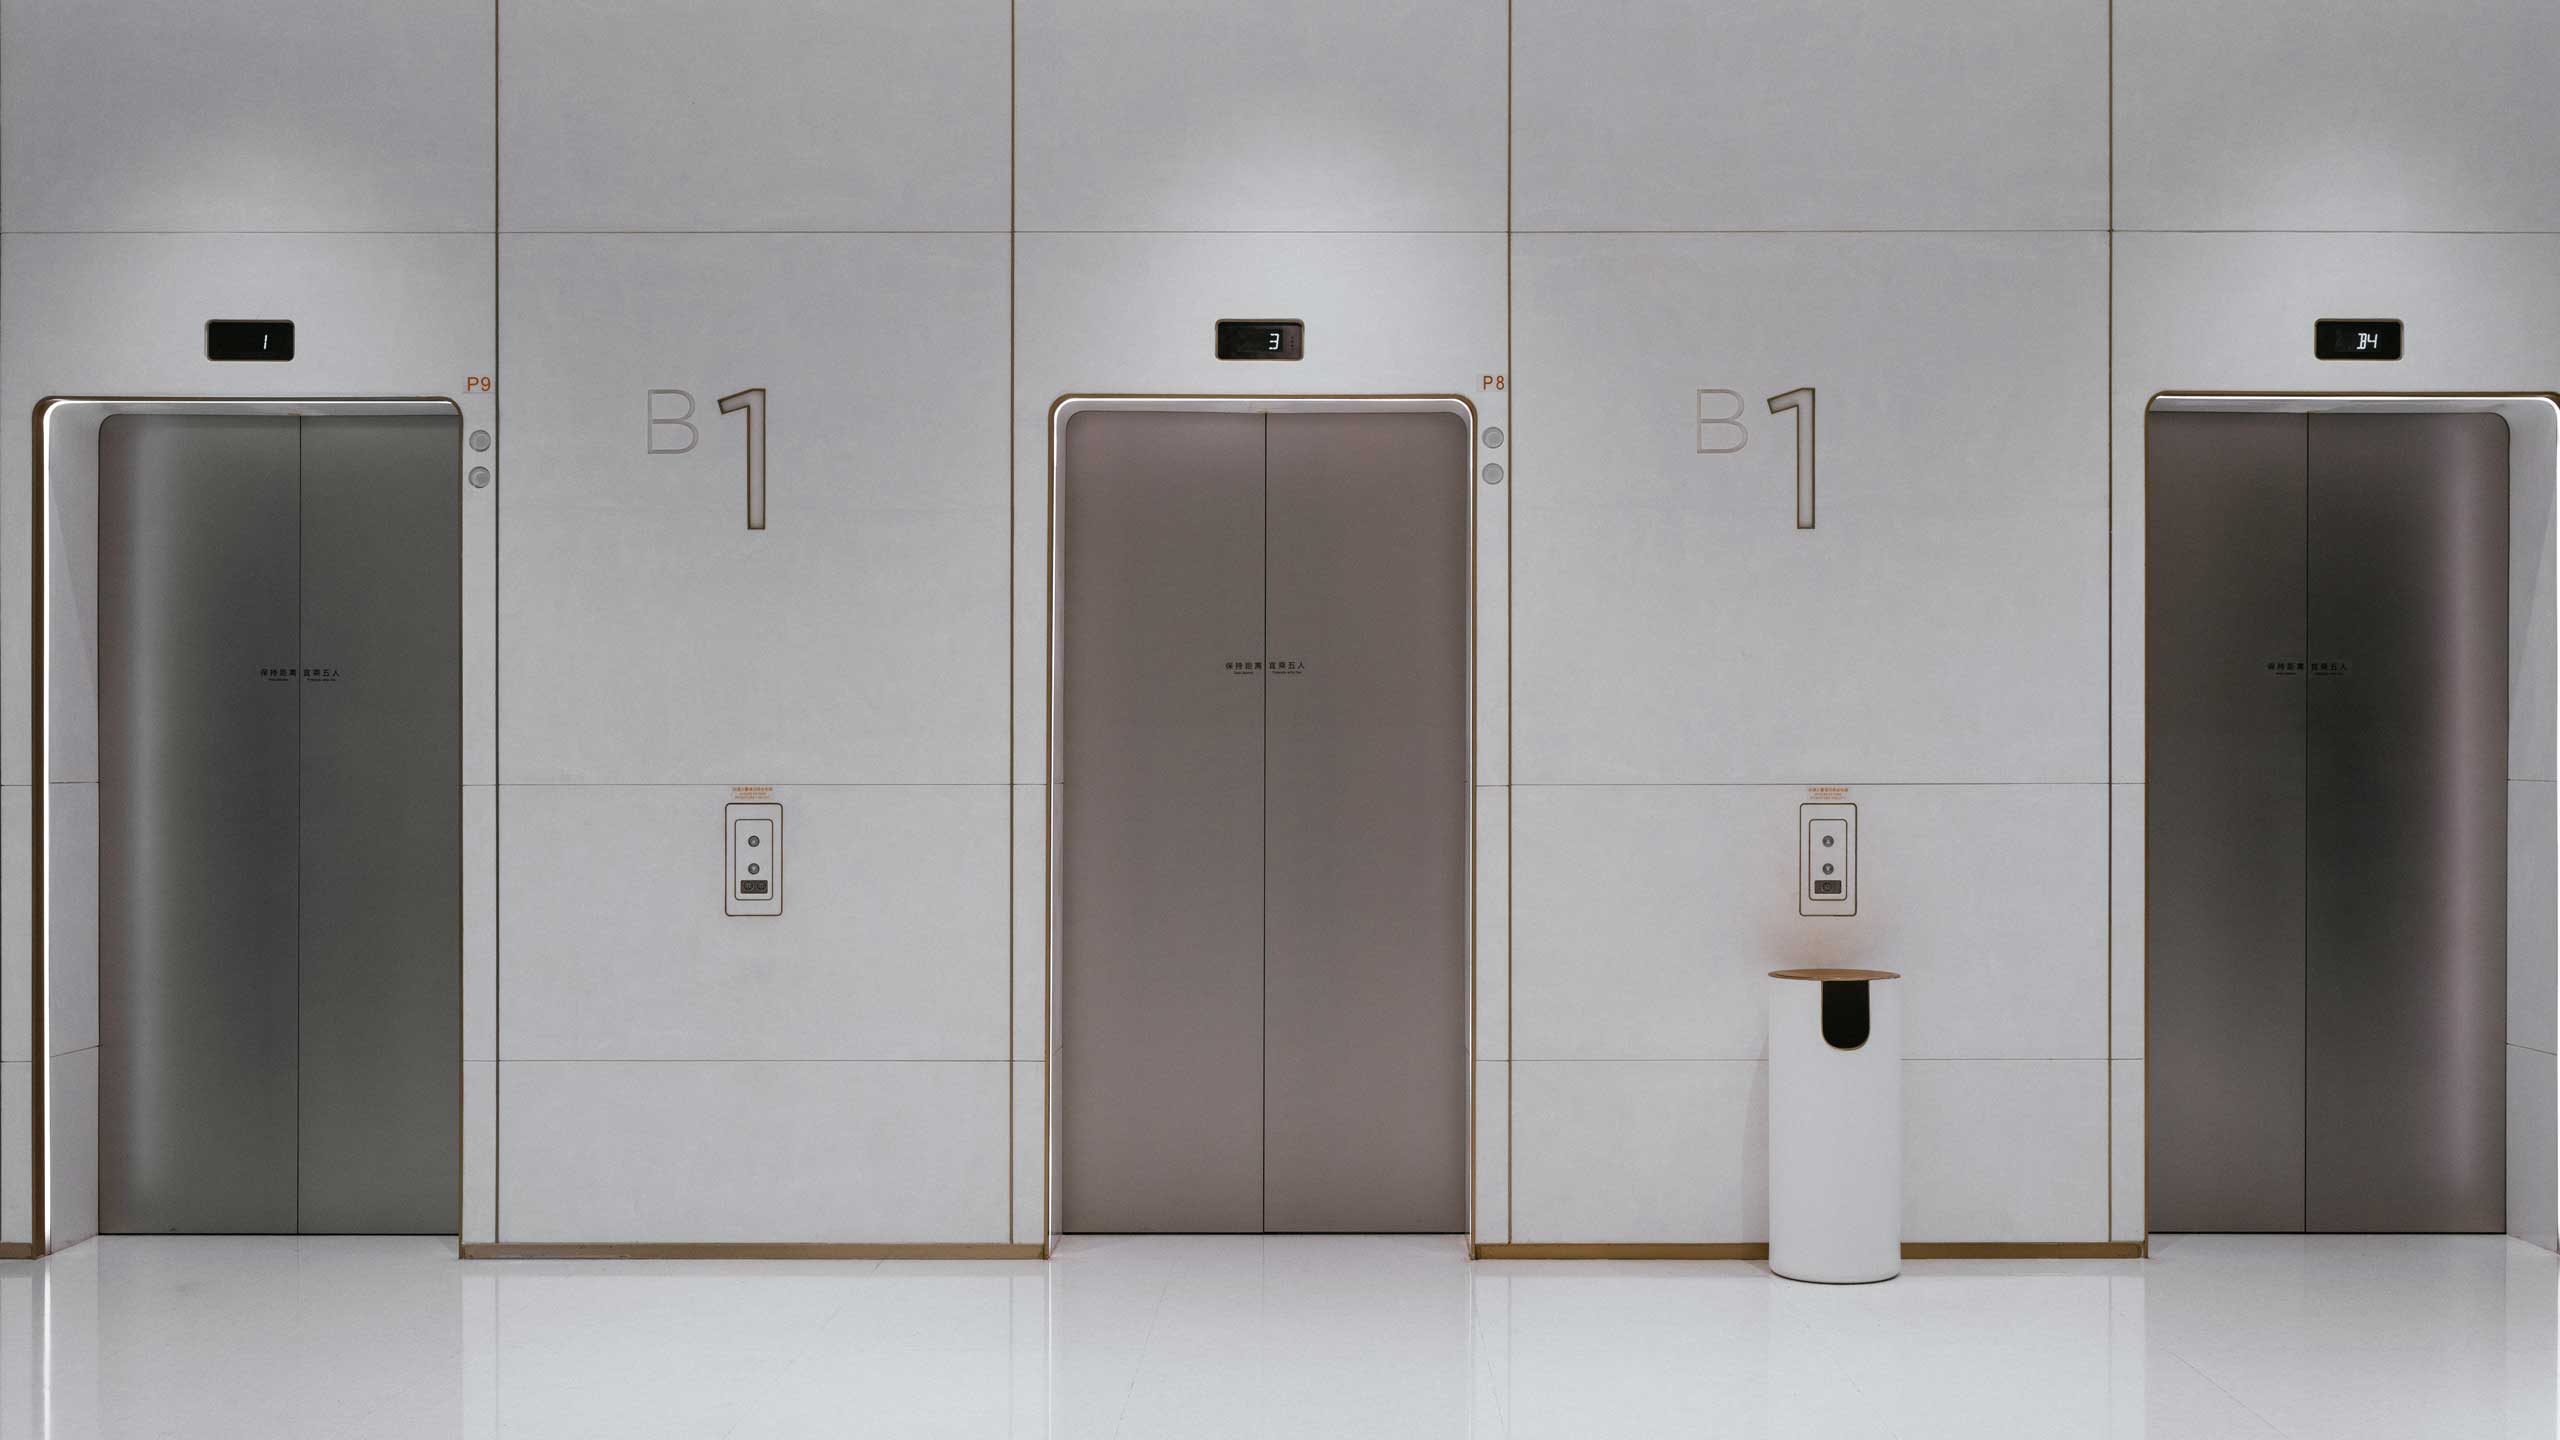 Imatge de l'interior de la cabina d'un ascensor